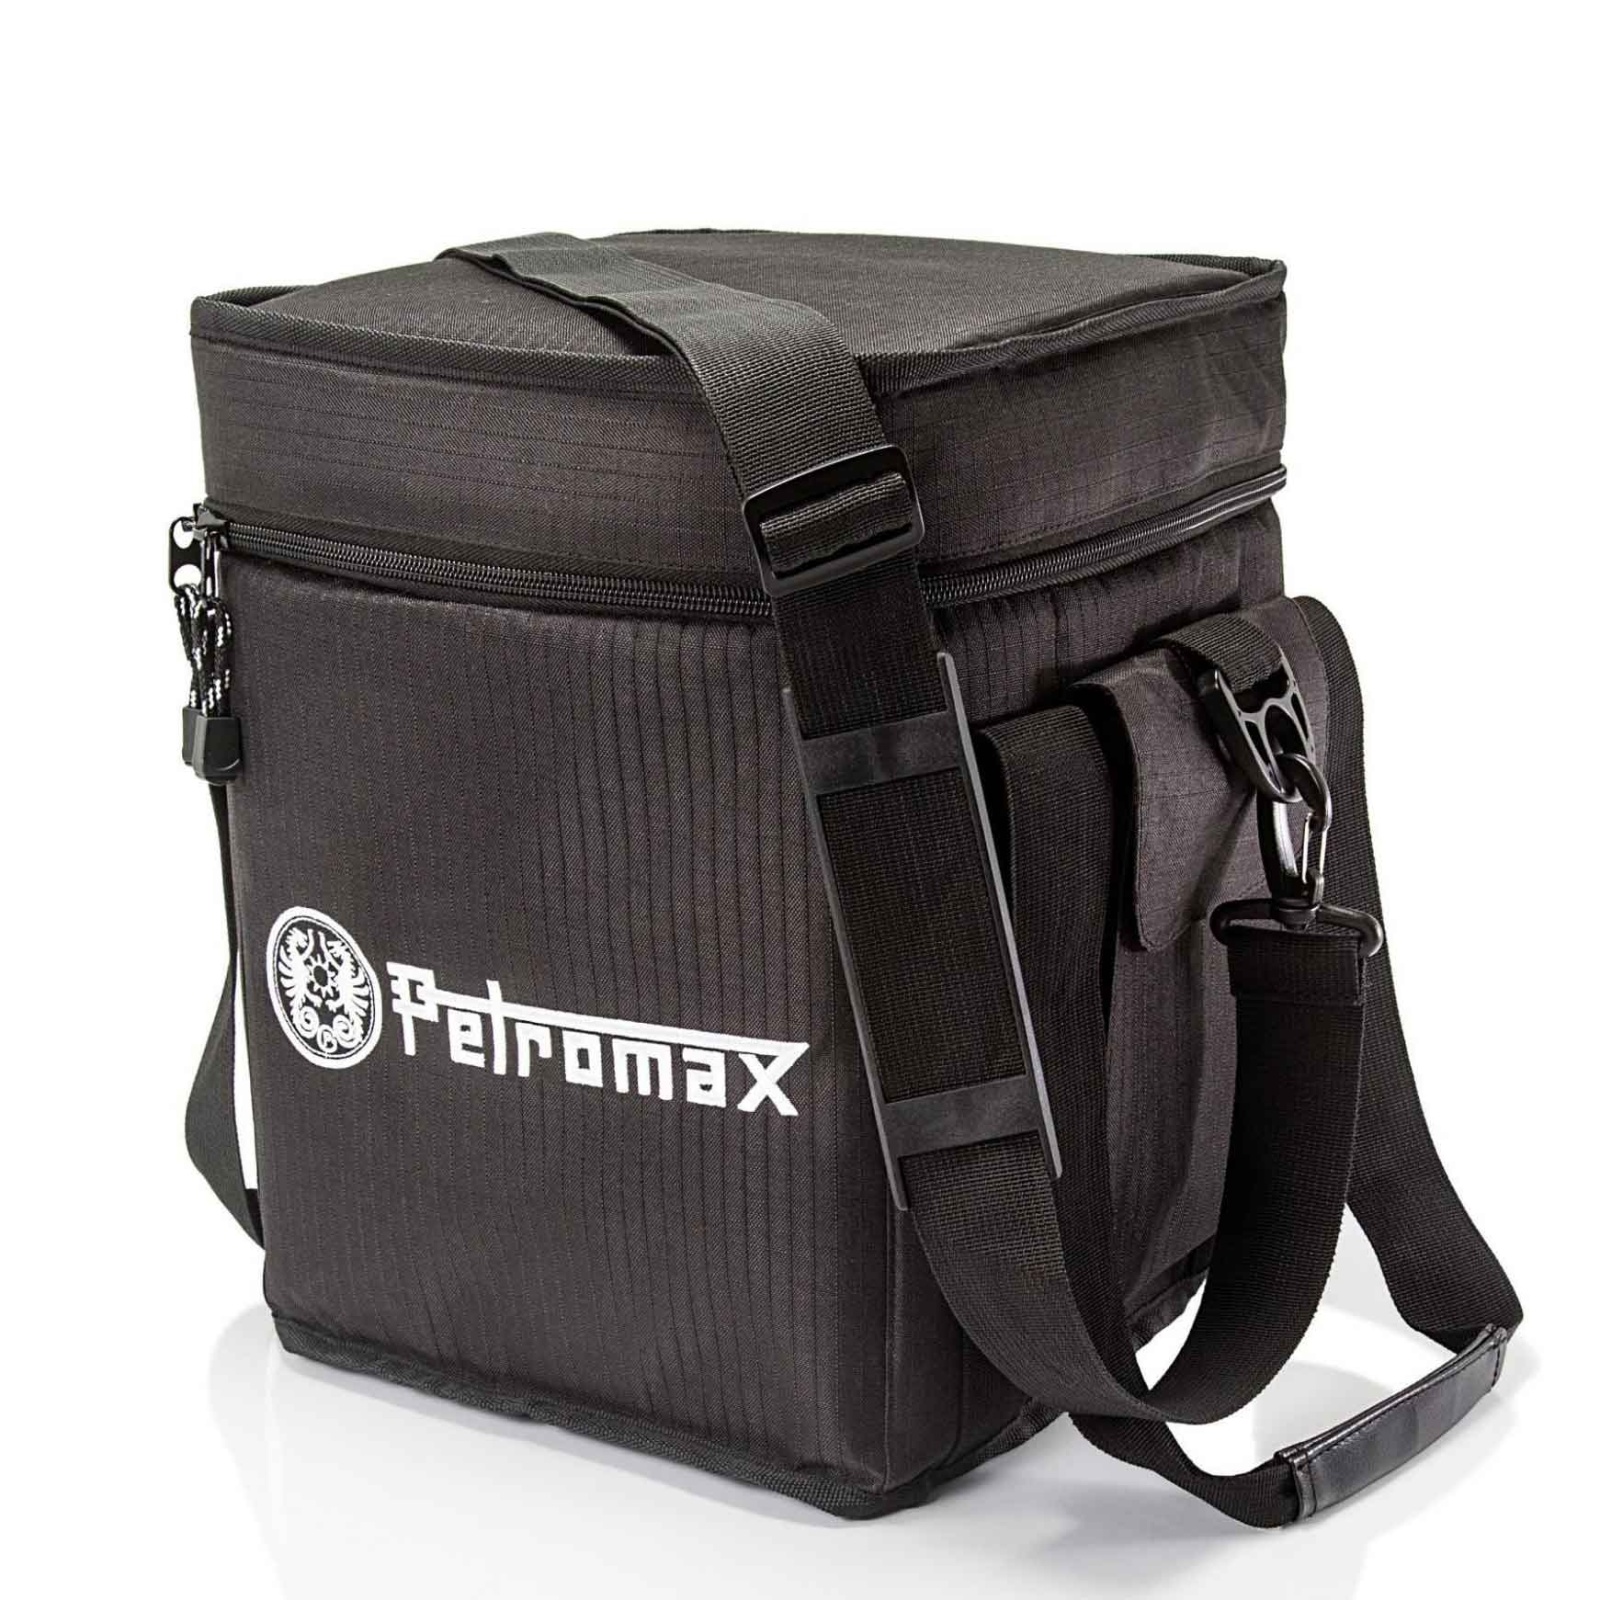 Petromax Tasche für Raketenofen rf33